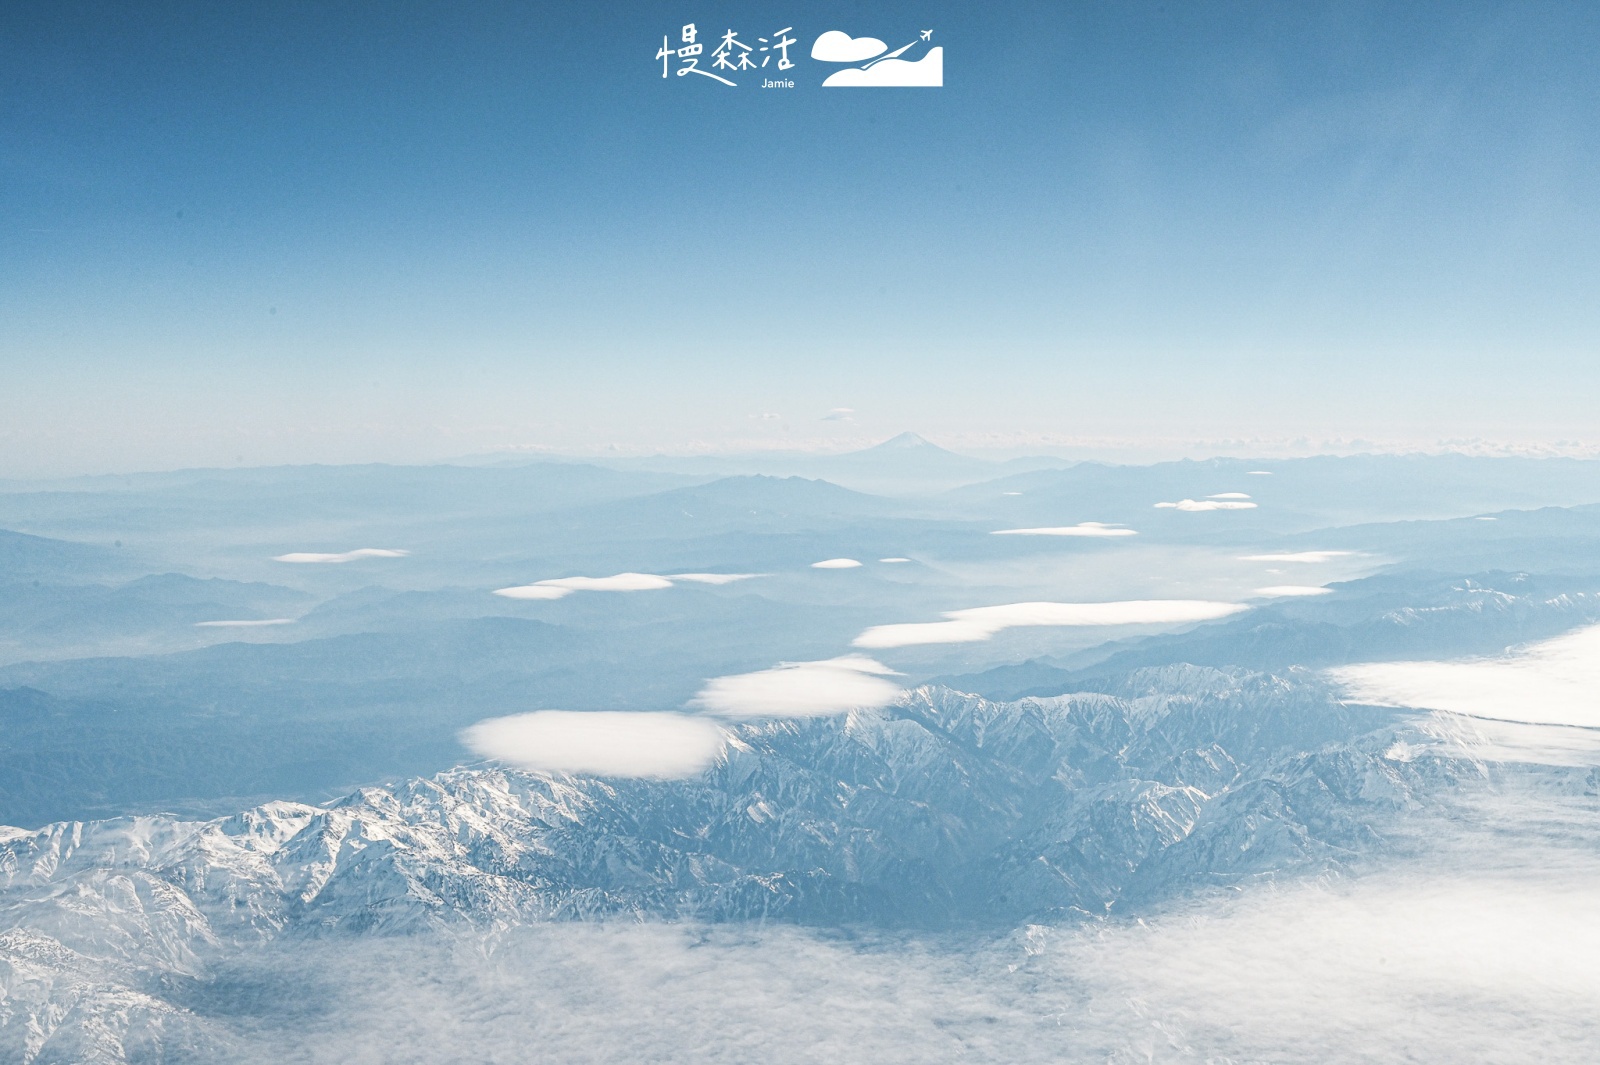 台灣虎航飛往秋田上空富士山與雪景